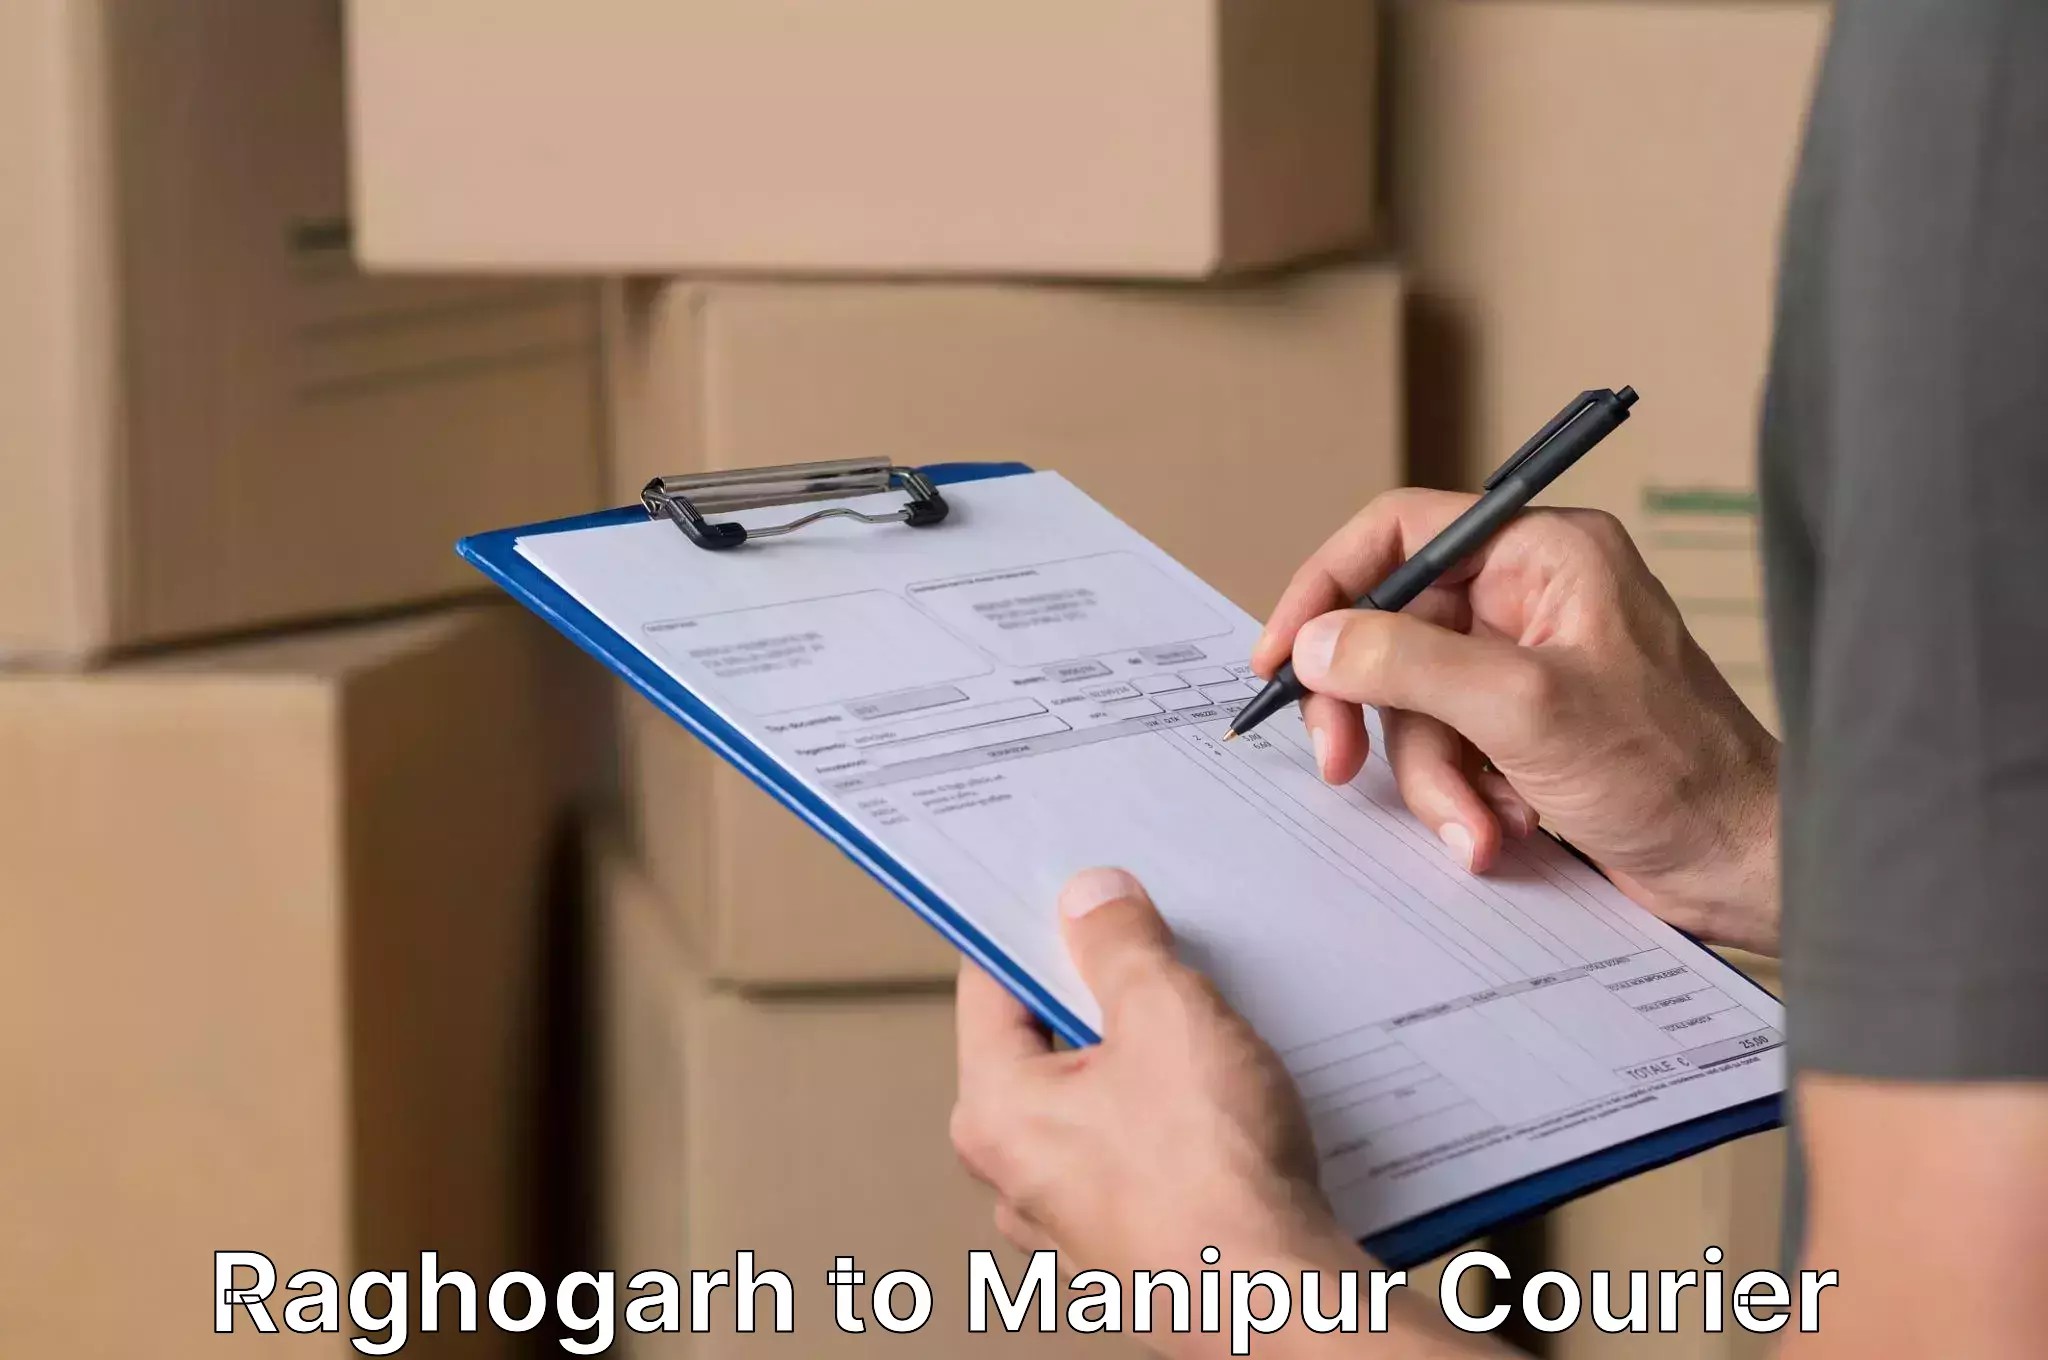 Furniture delivery service Raghogarh to Churachandpur